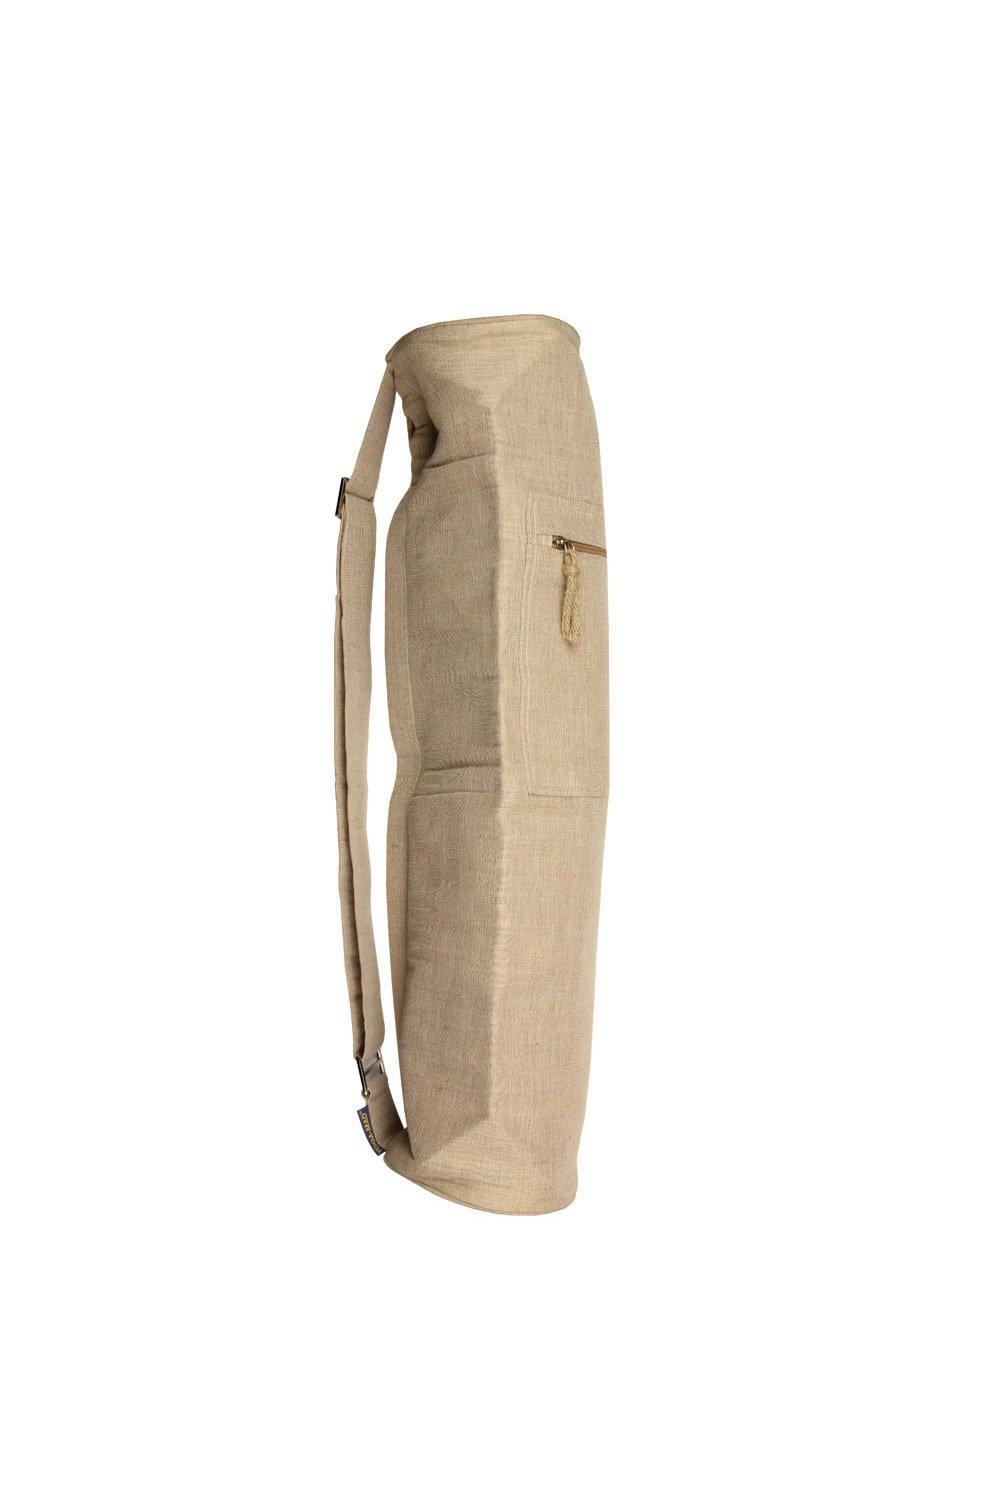 Джутовая сумка для коврика для йоги Yoga-Mad, обнаженная косметичка mior на молнии 19х21х9 см ручки для переноски крючок для подвешивания подкладка водонепроницаемая фиолетовый